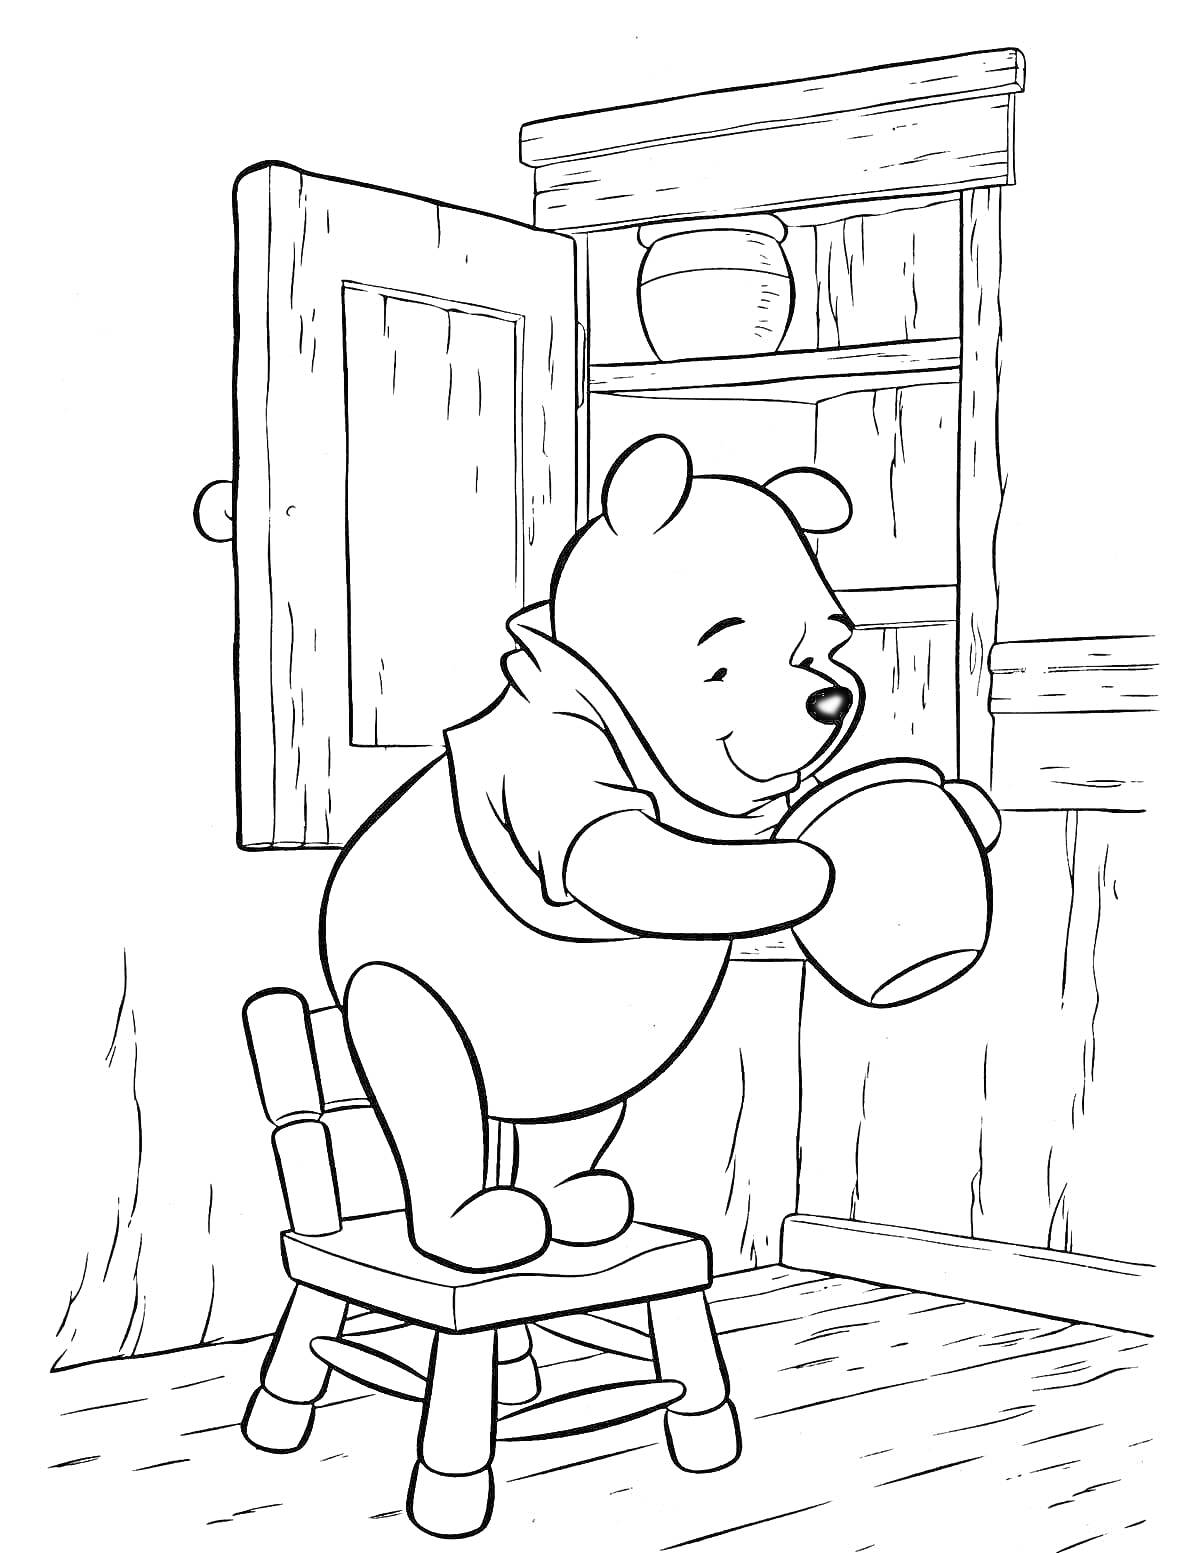 Раскраска Винни-Пух на стуле с горшком меда у шкафа